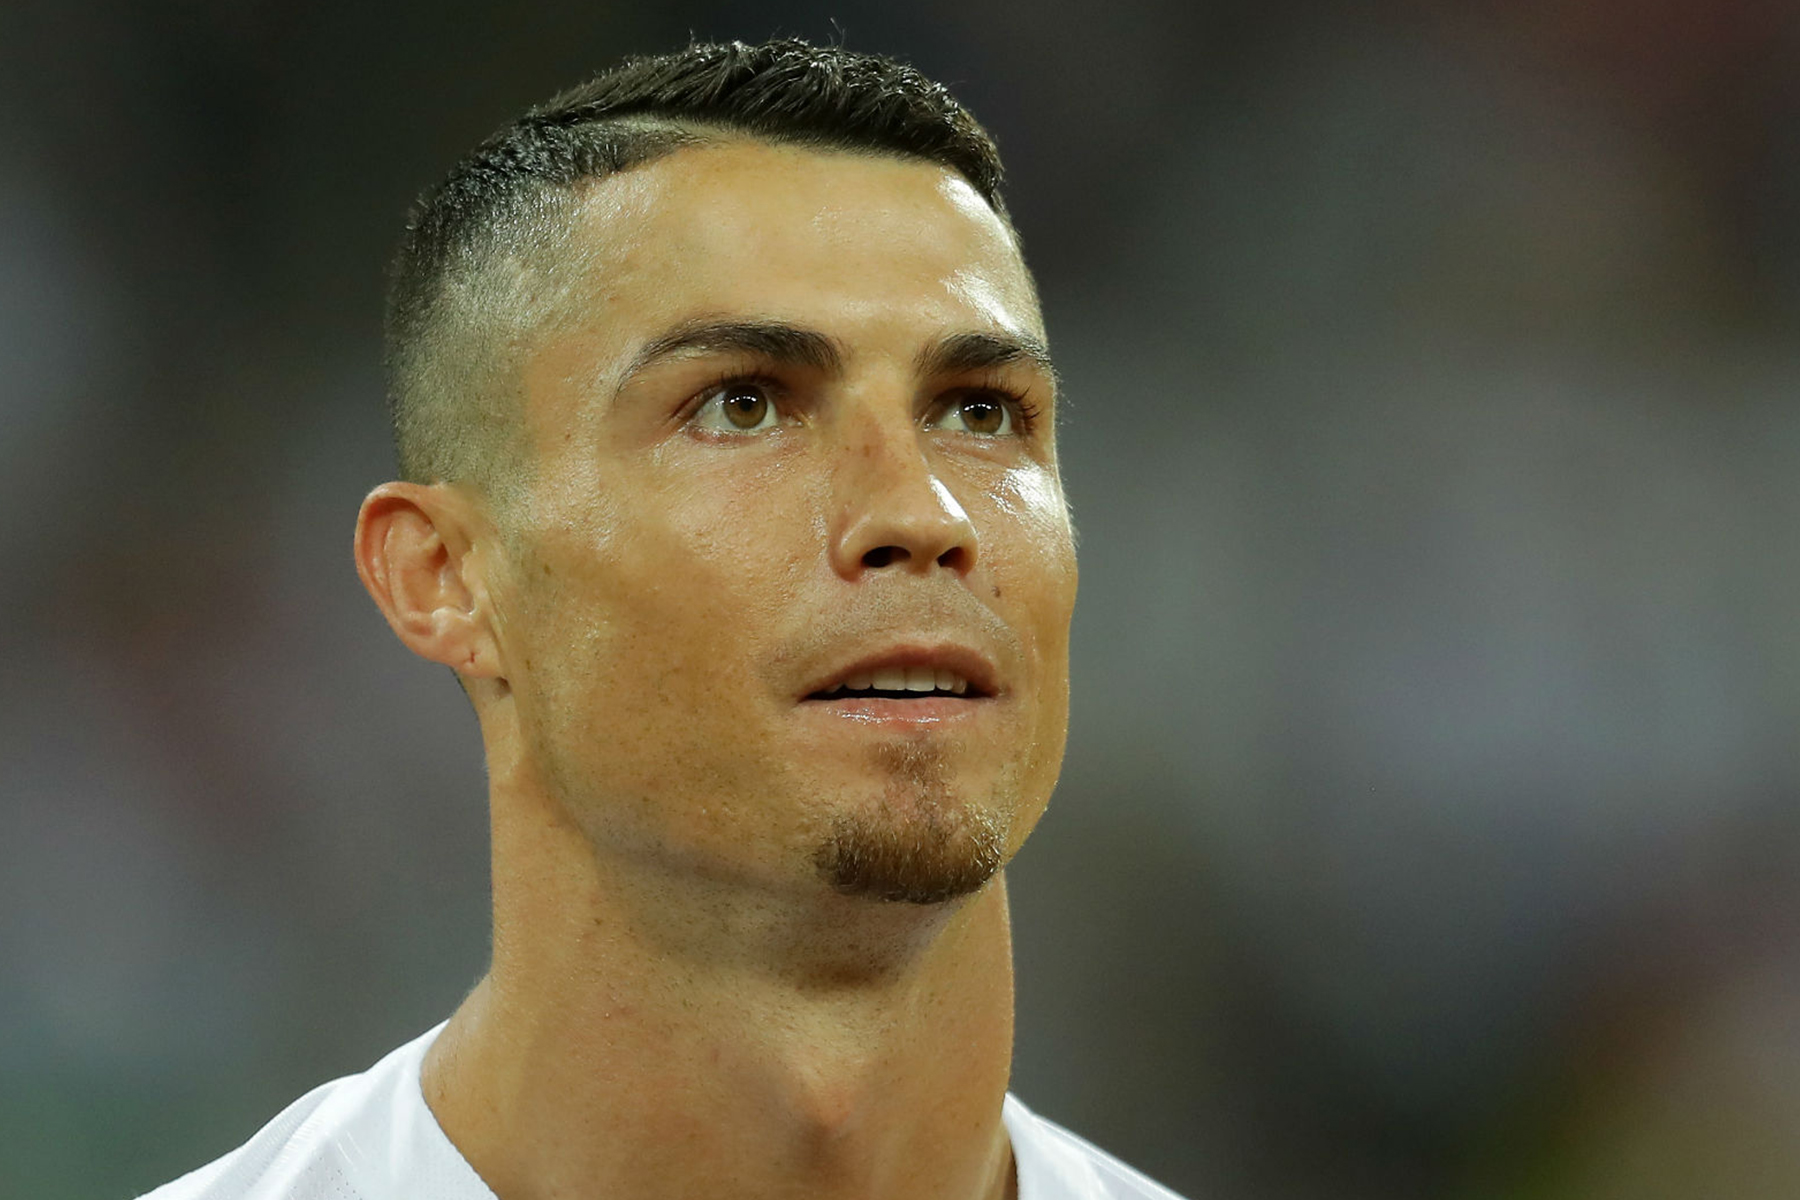  Cristiano Ronaldo niega acusación de violación